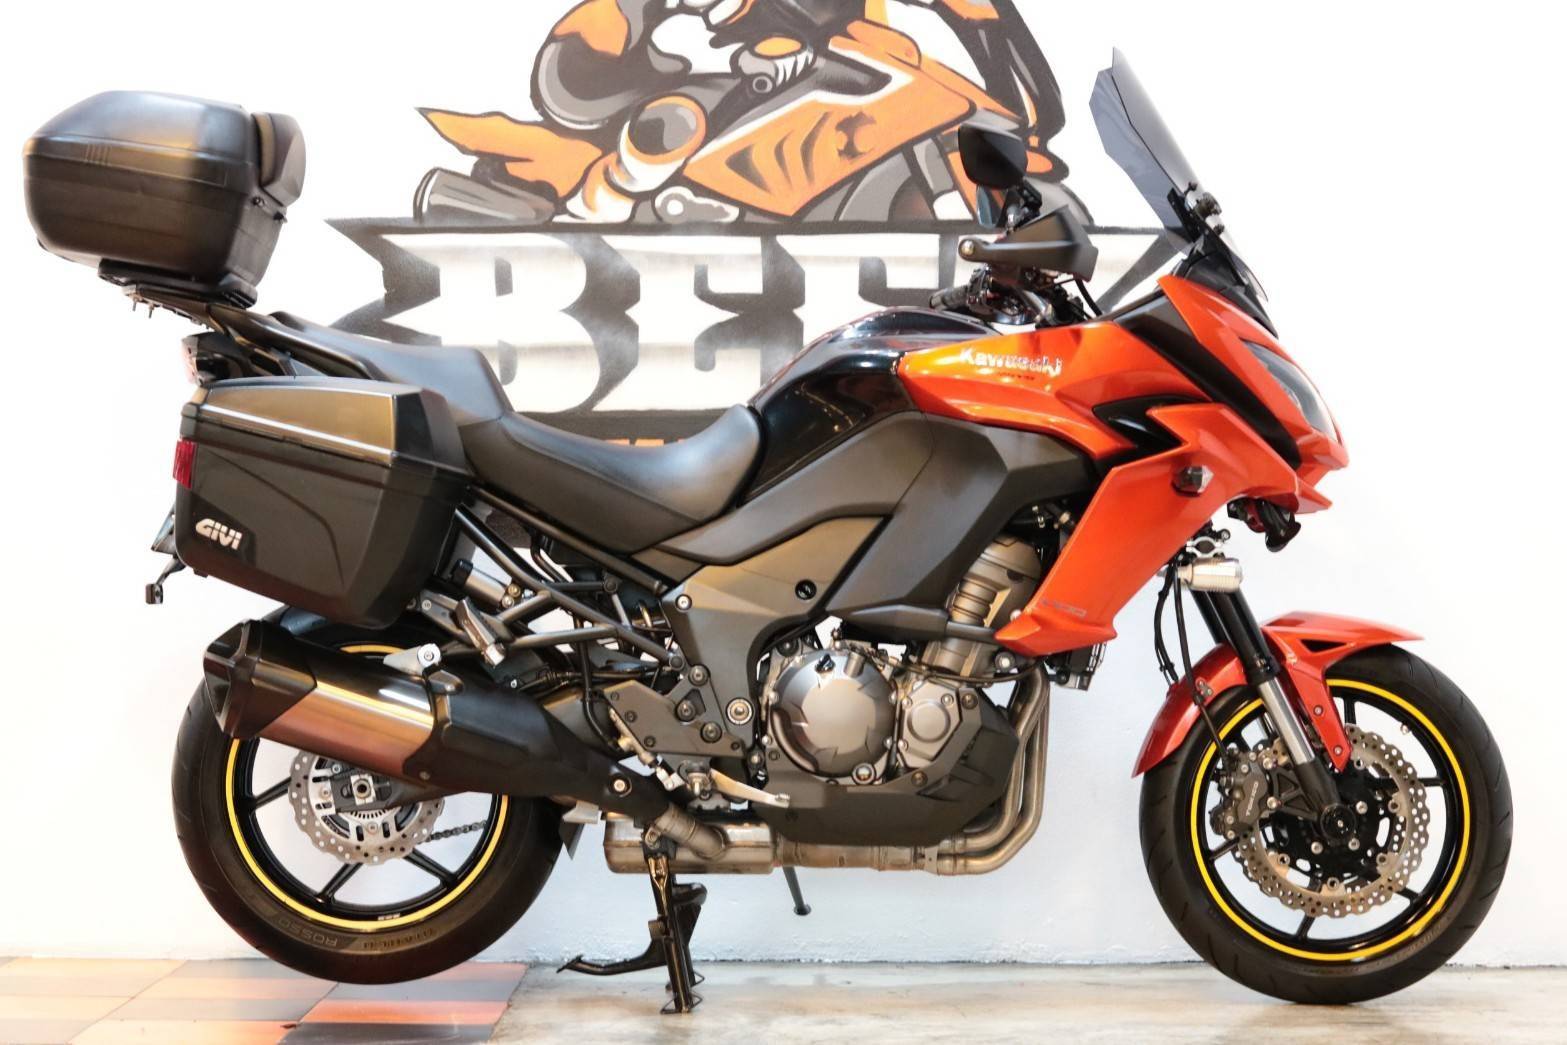 ขาย Kawasaki Versys1000 ABS ปี 2015 สภาพป้ายแดง แต่งเต็ม